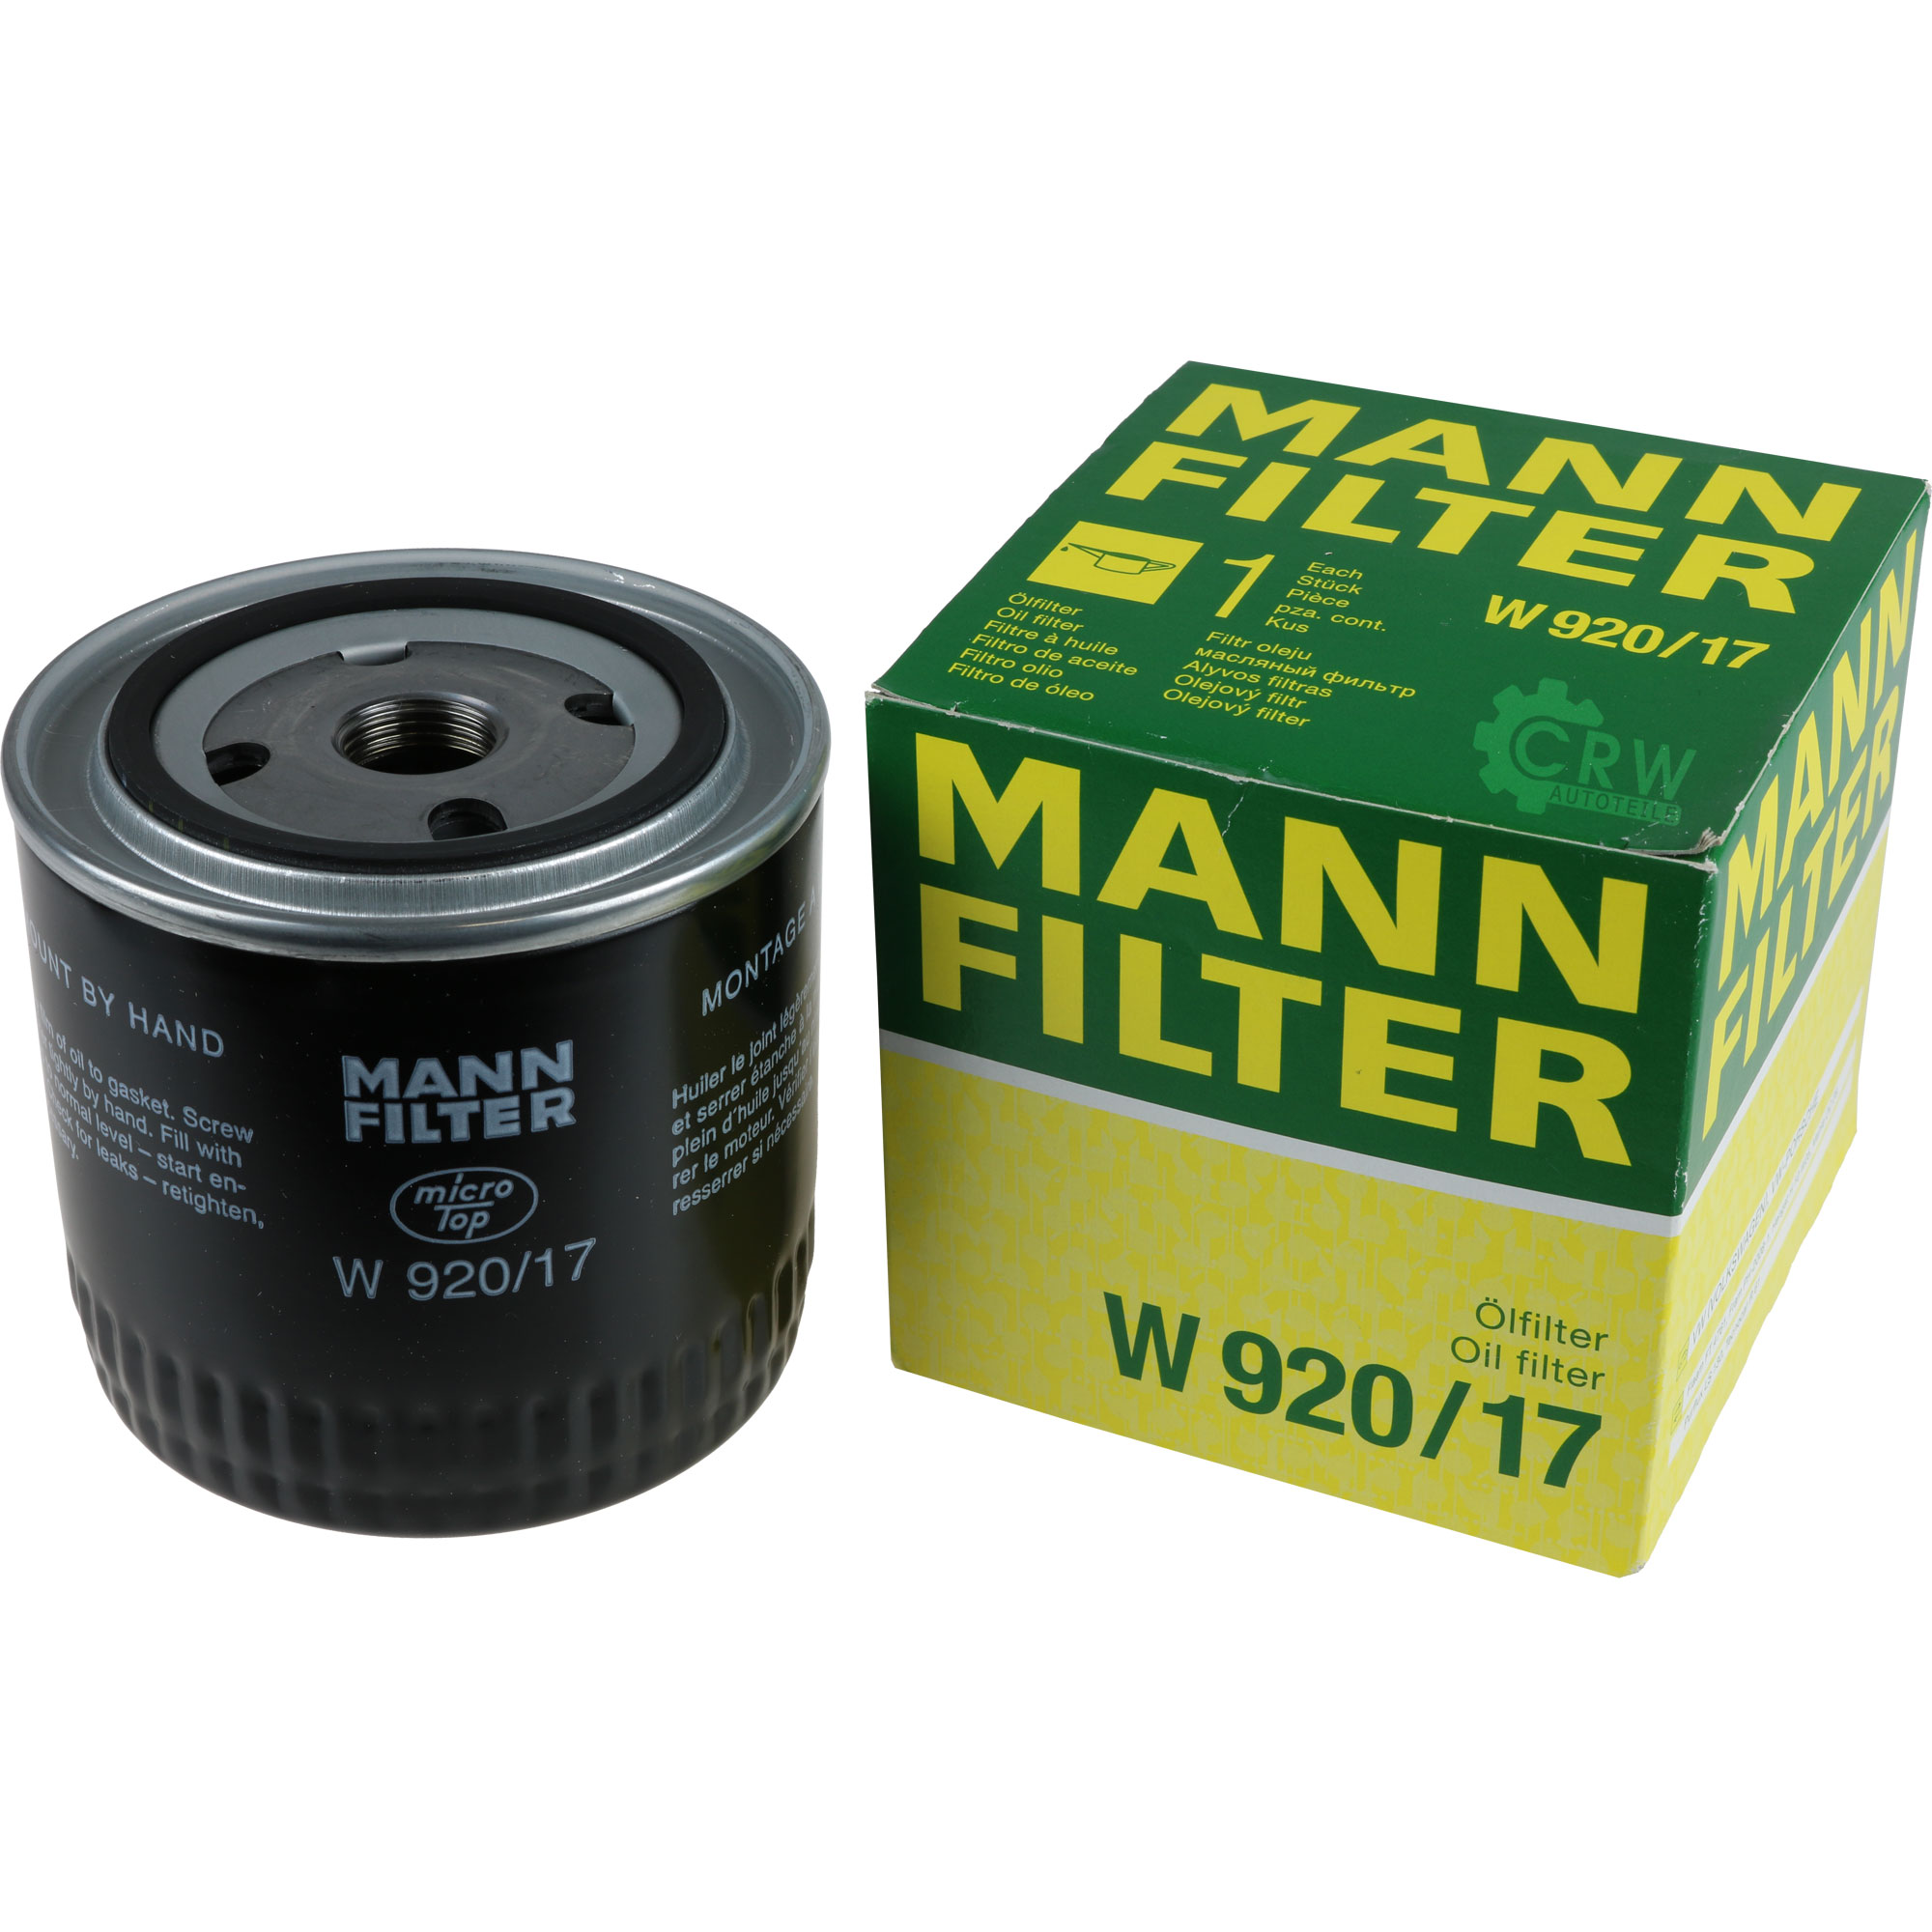 MANN-FILTER Ölfilter W 920/17 Oil Filter